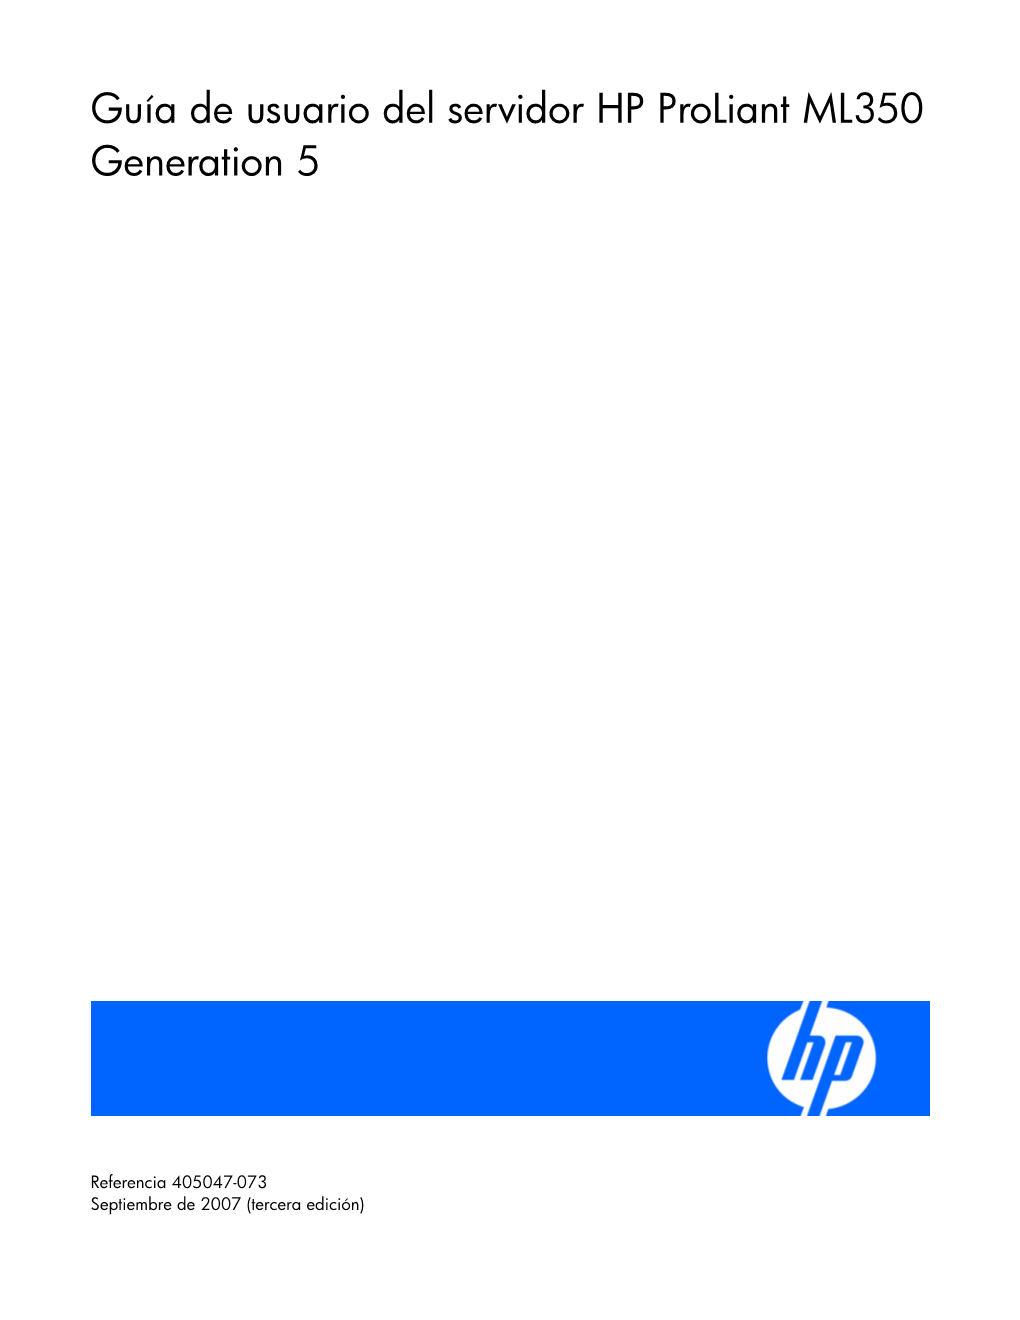 Guía De Usuario Del Servidor HP Proliant ML350 Generation 5